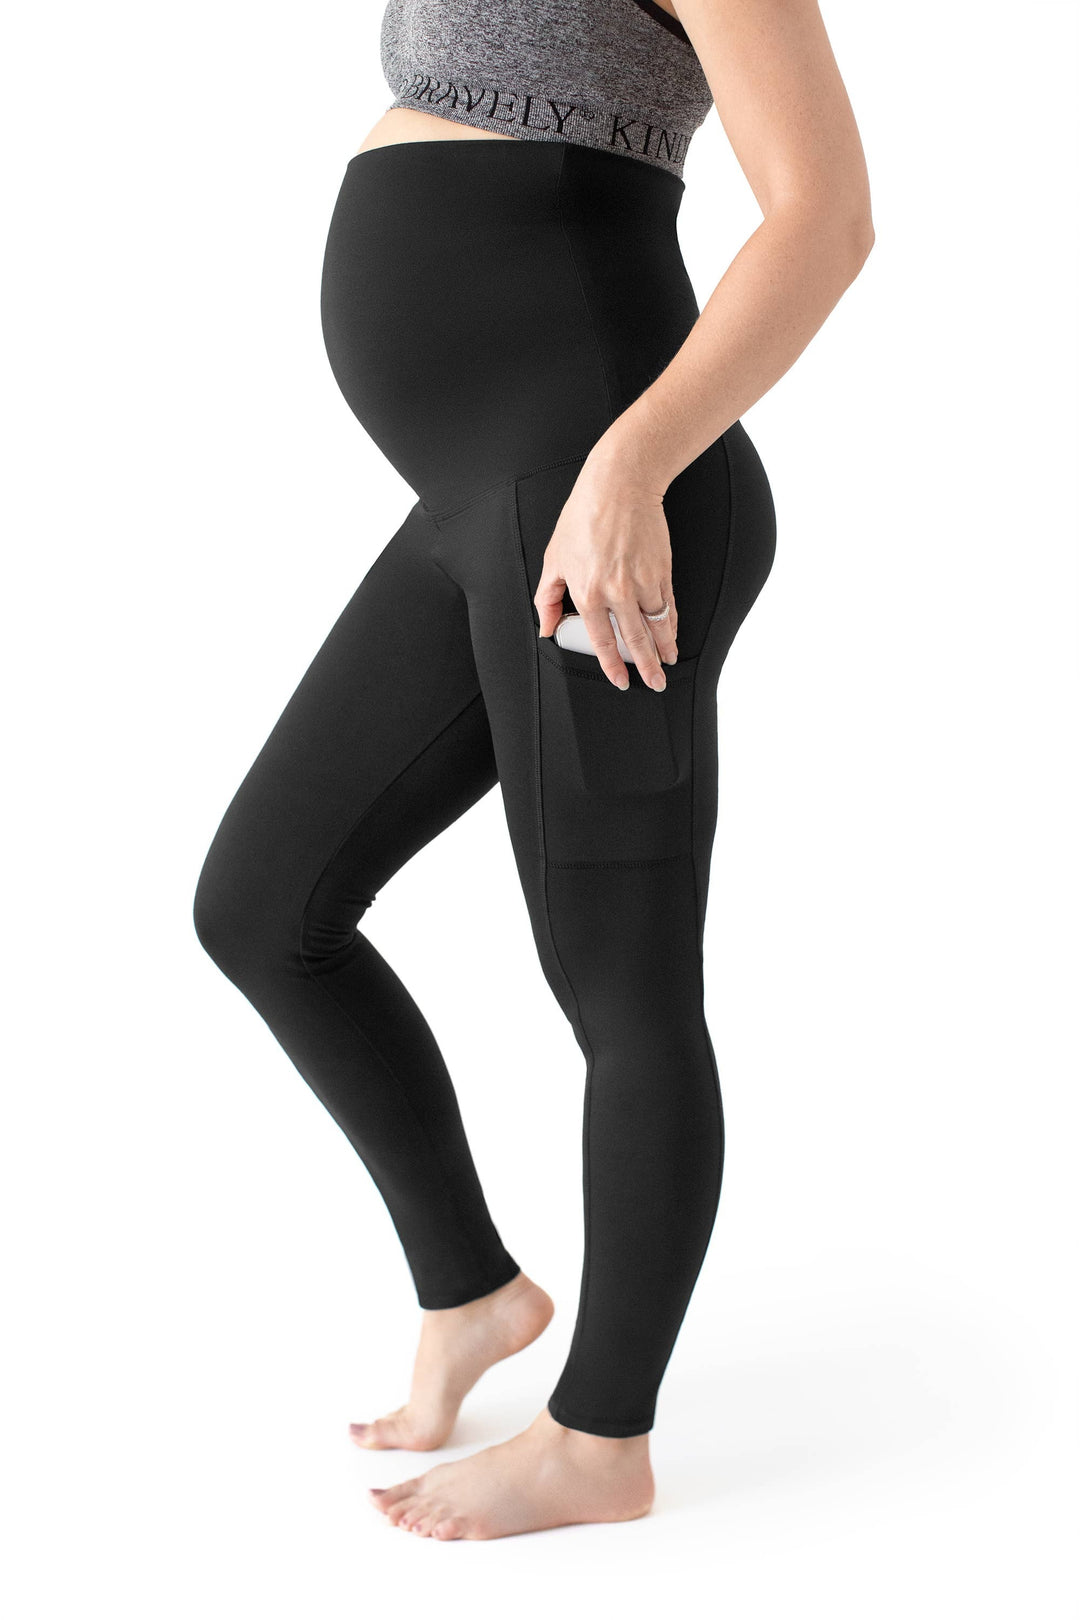 Kindred Bravely - Louisa Maternity & Postpartum Support Leggings Black